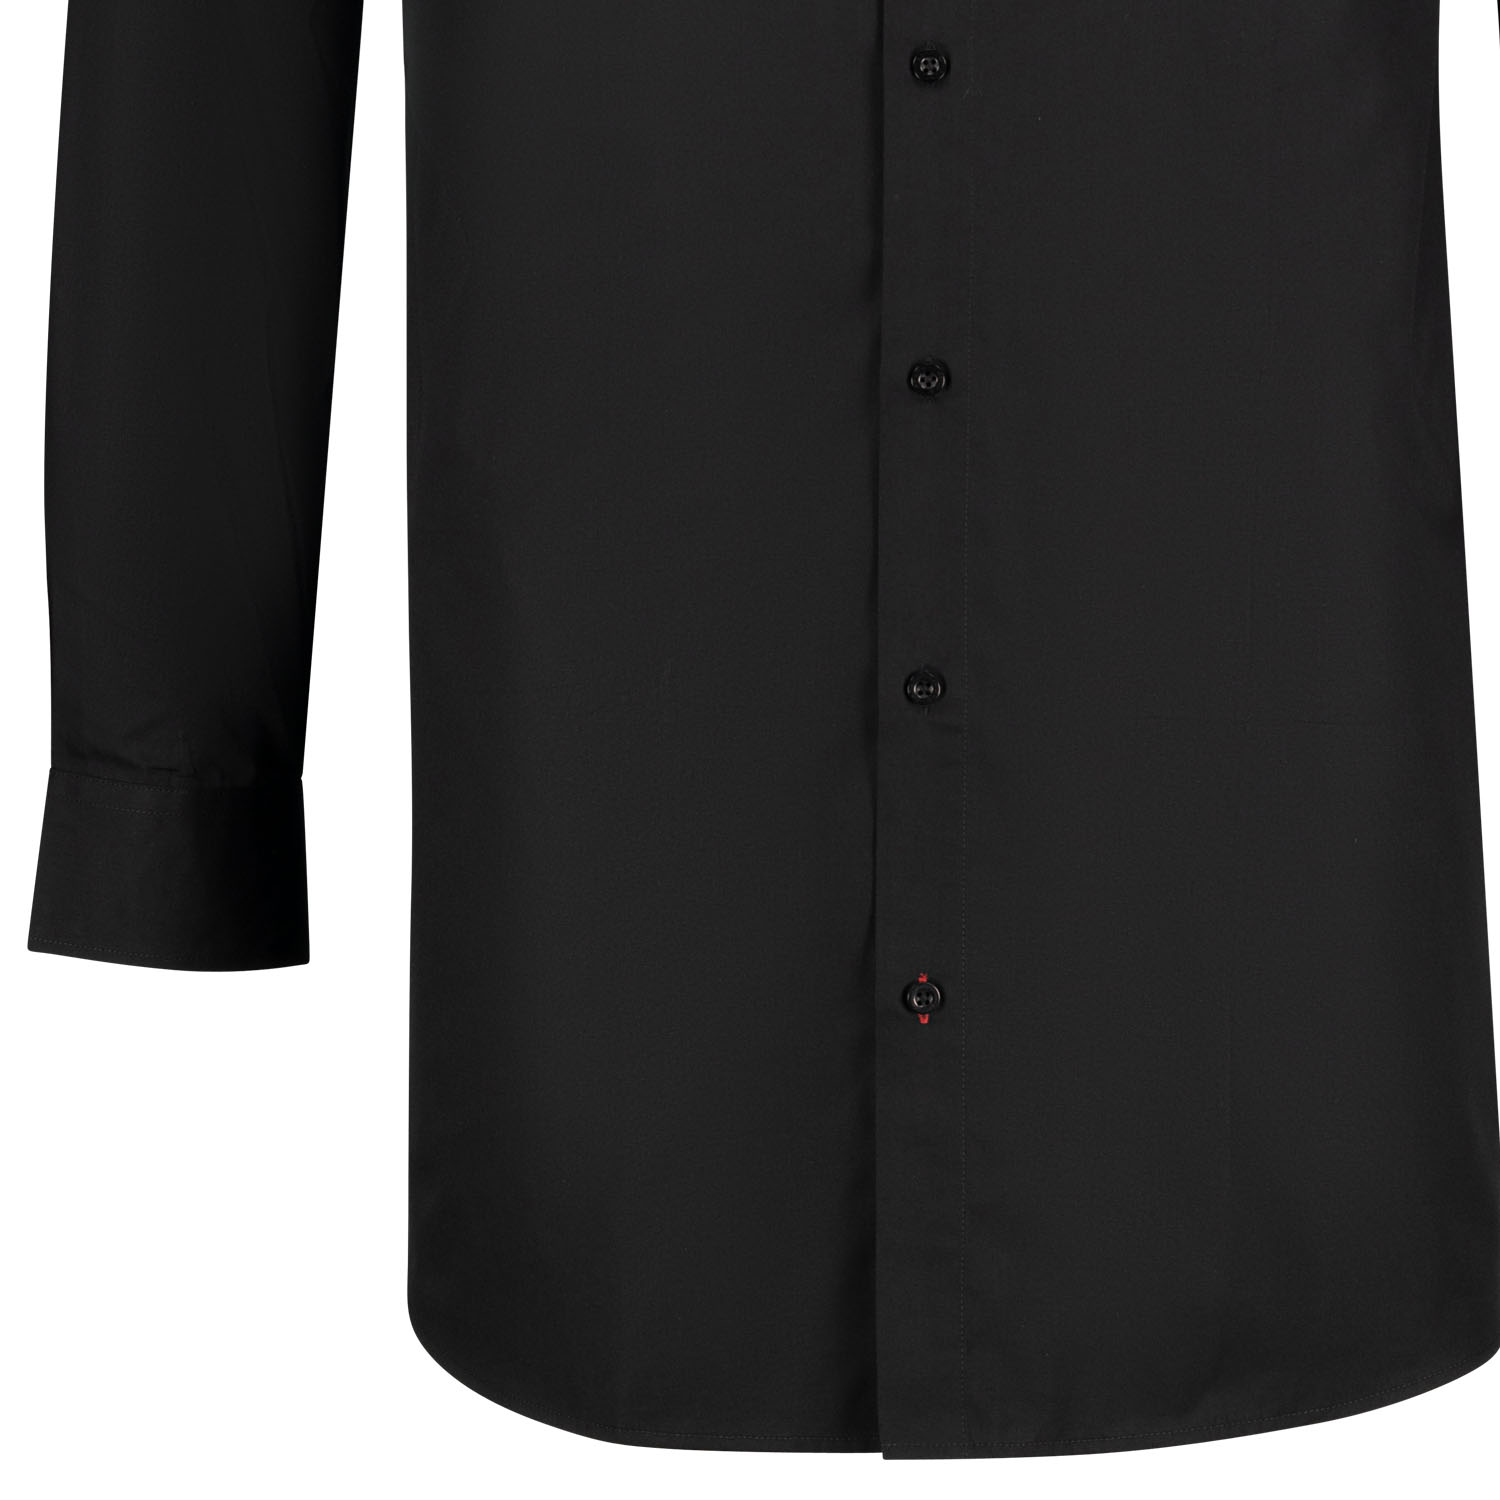 Schwarzes Herren Businesshemd Hemd COMFORT FIT langarm Serie "John" von ADAMO in großen Größen von 2XL bis 10XL